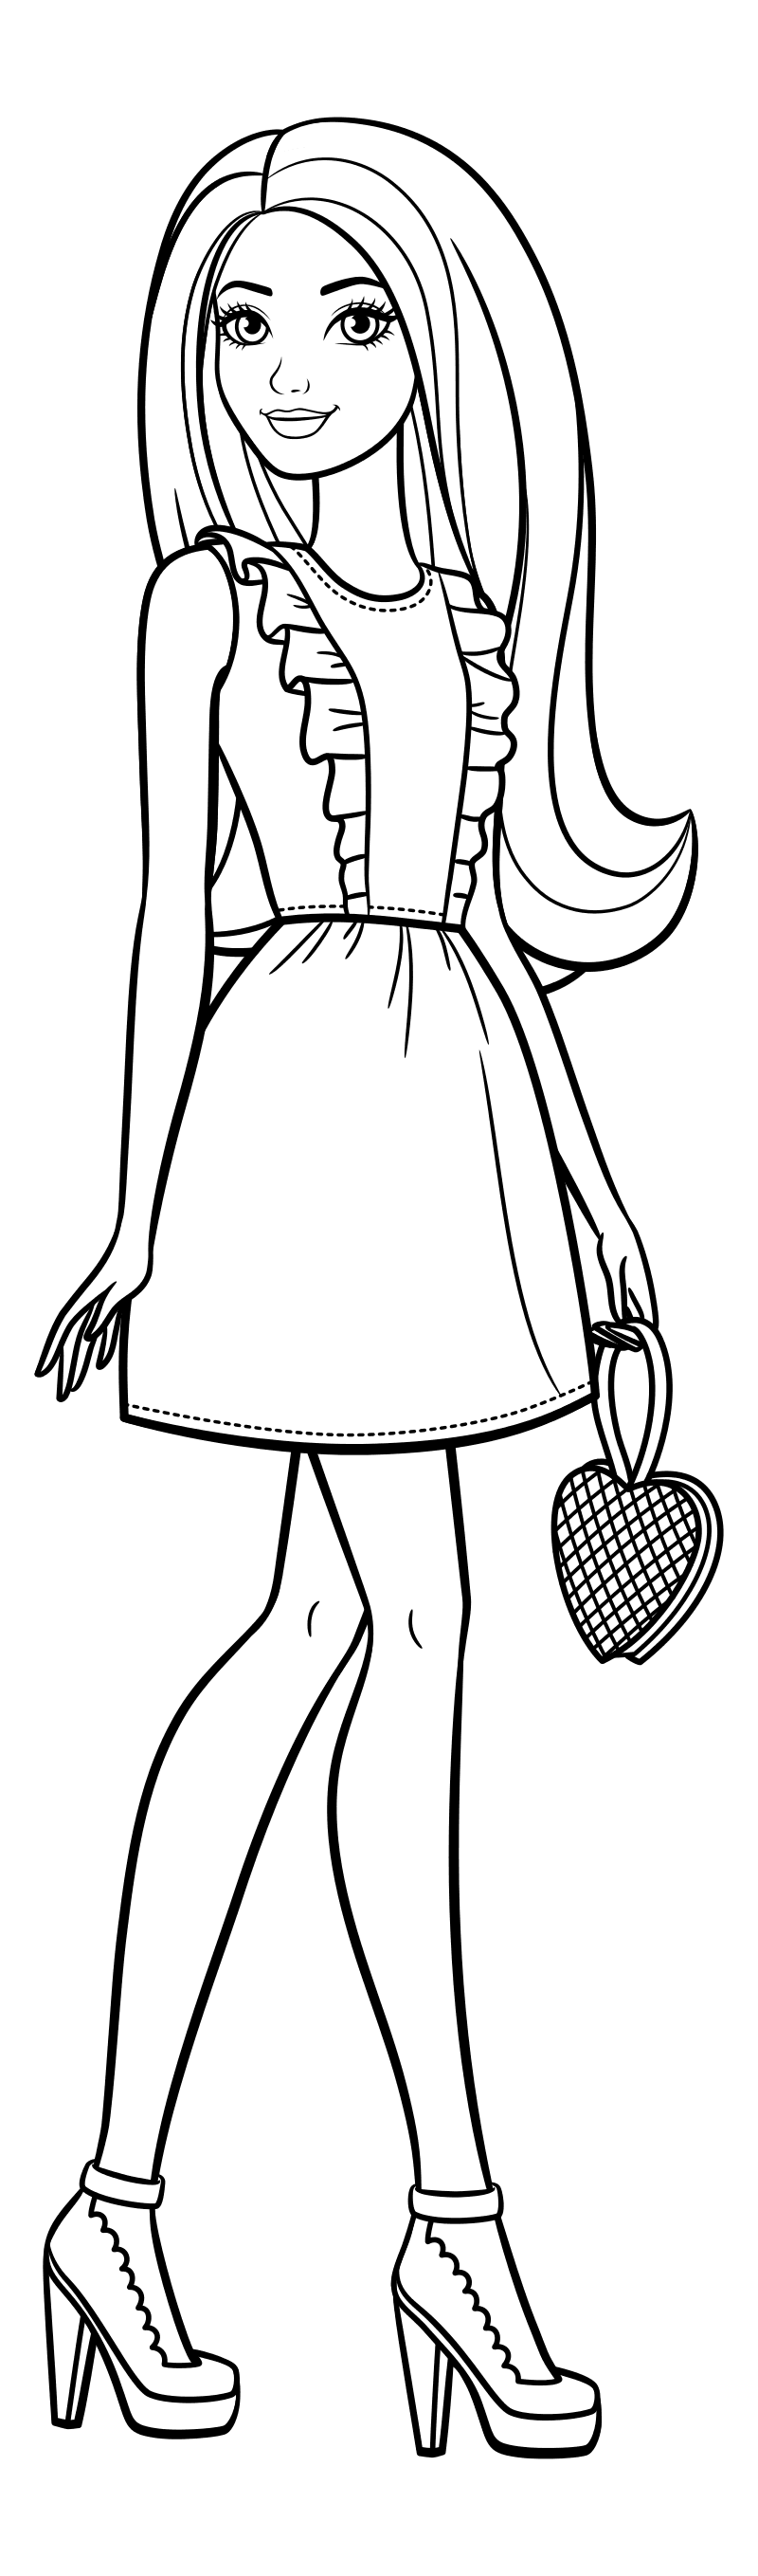 Раскраска - Барби - Барби в красивом платье с сумочкой